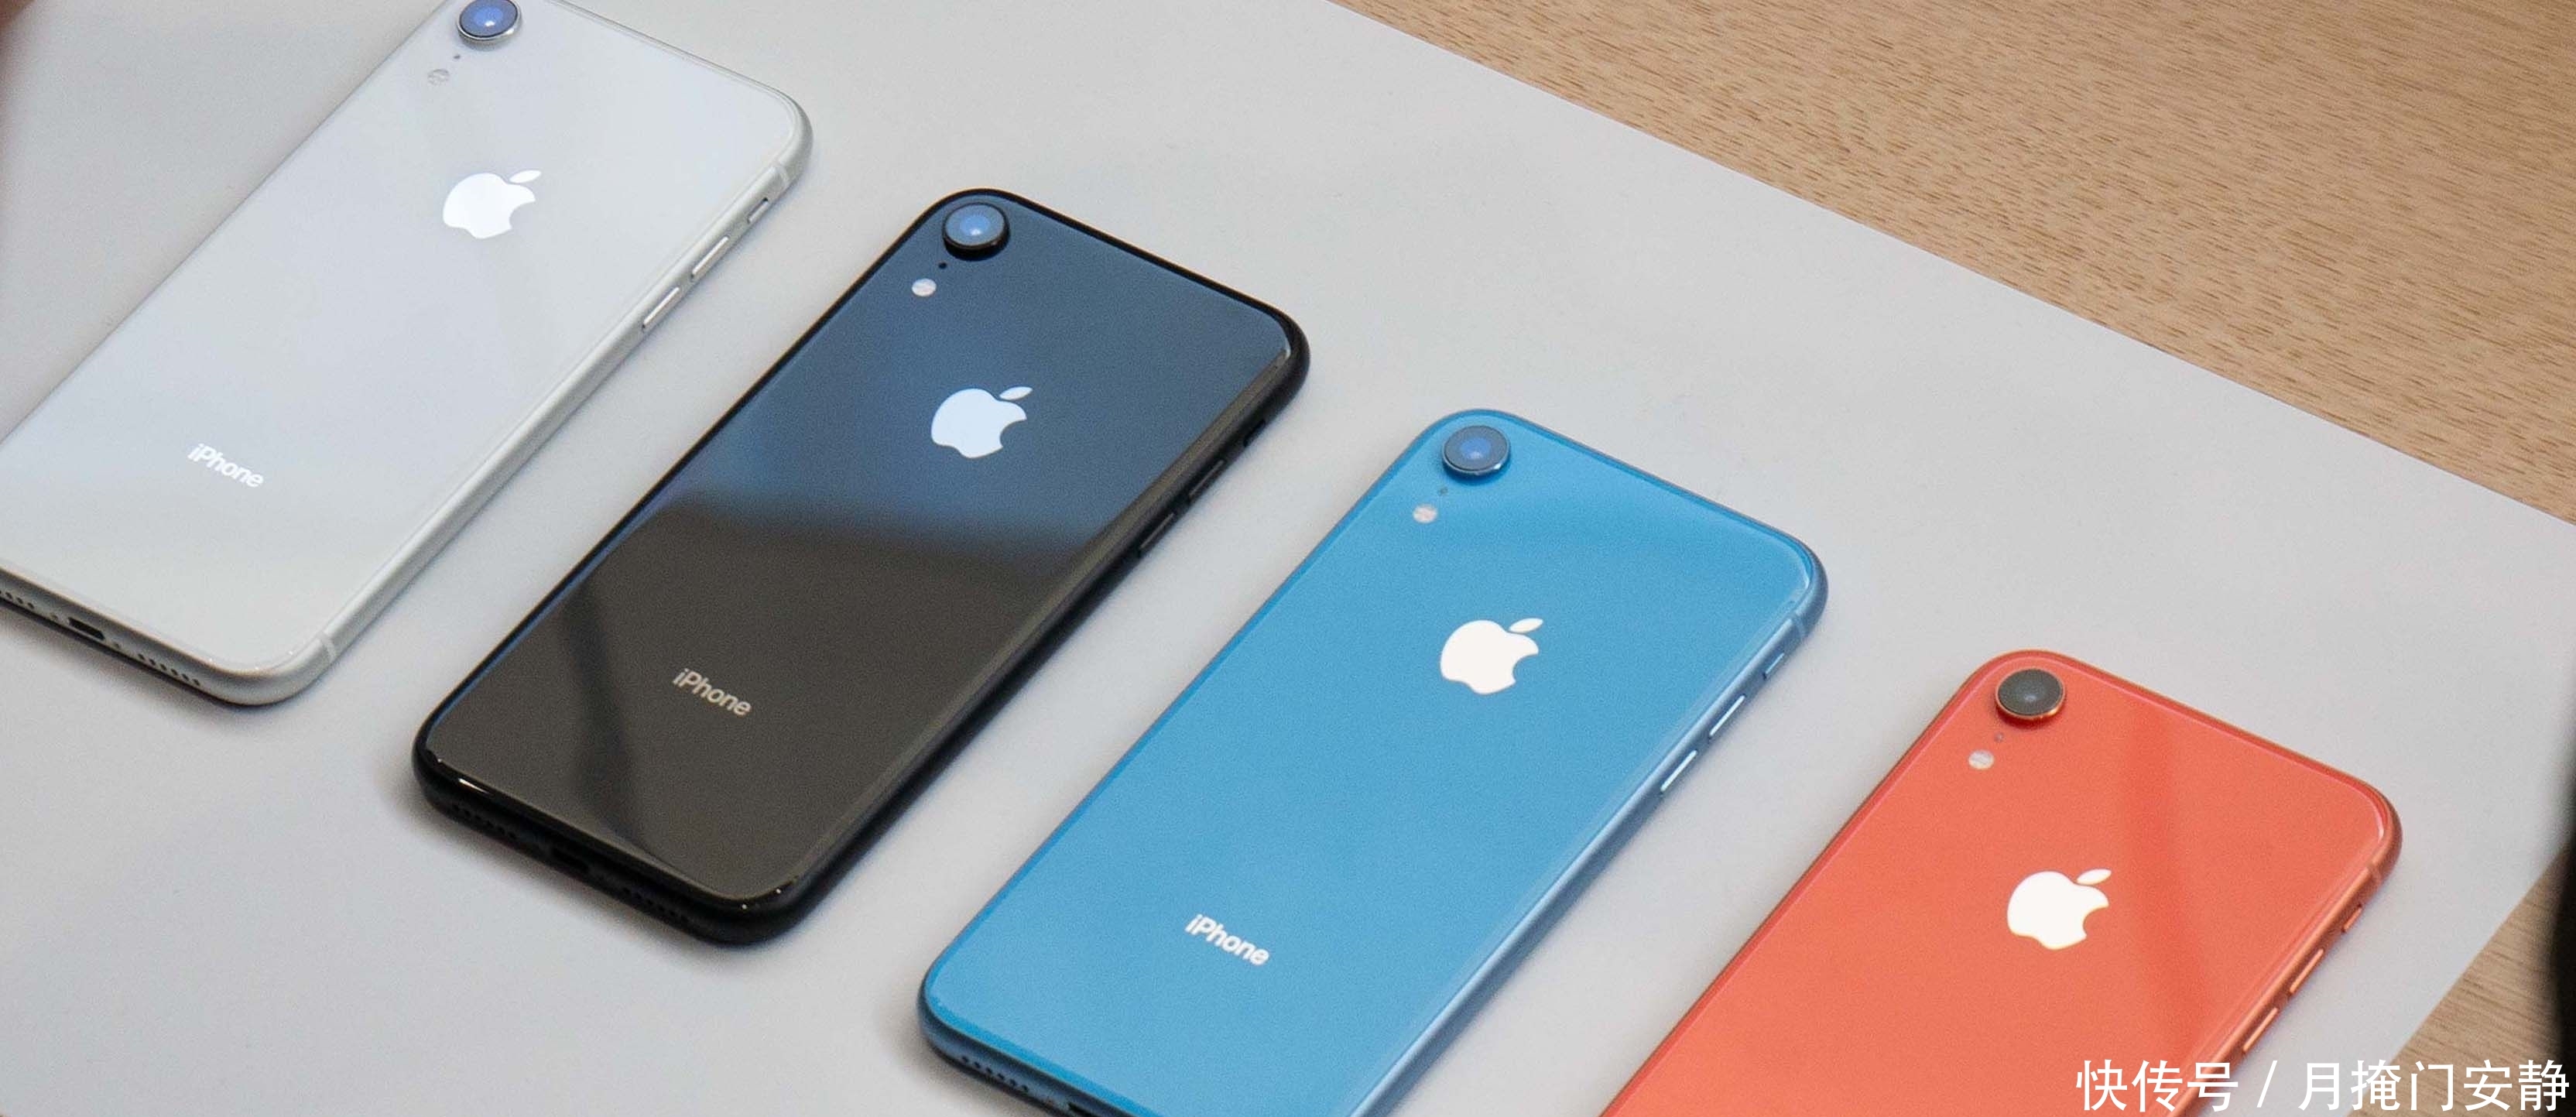 2018年被严重低估的四台手机,iPhoneXR凭什么